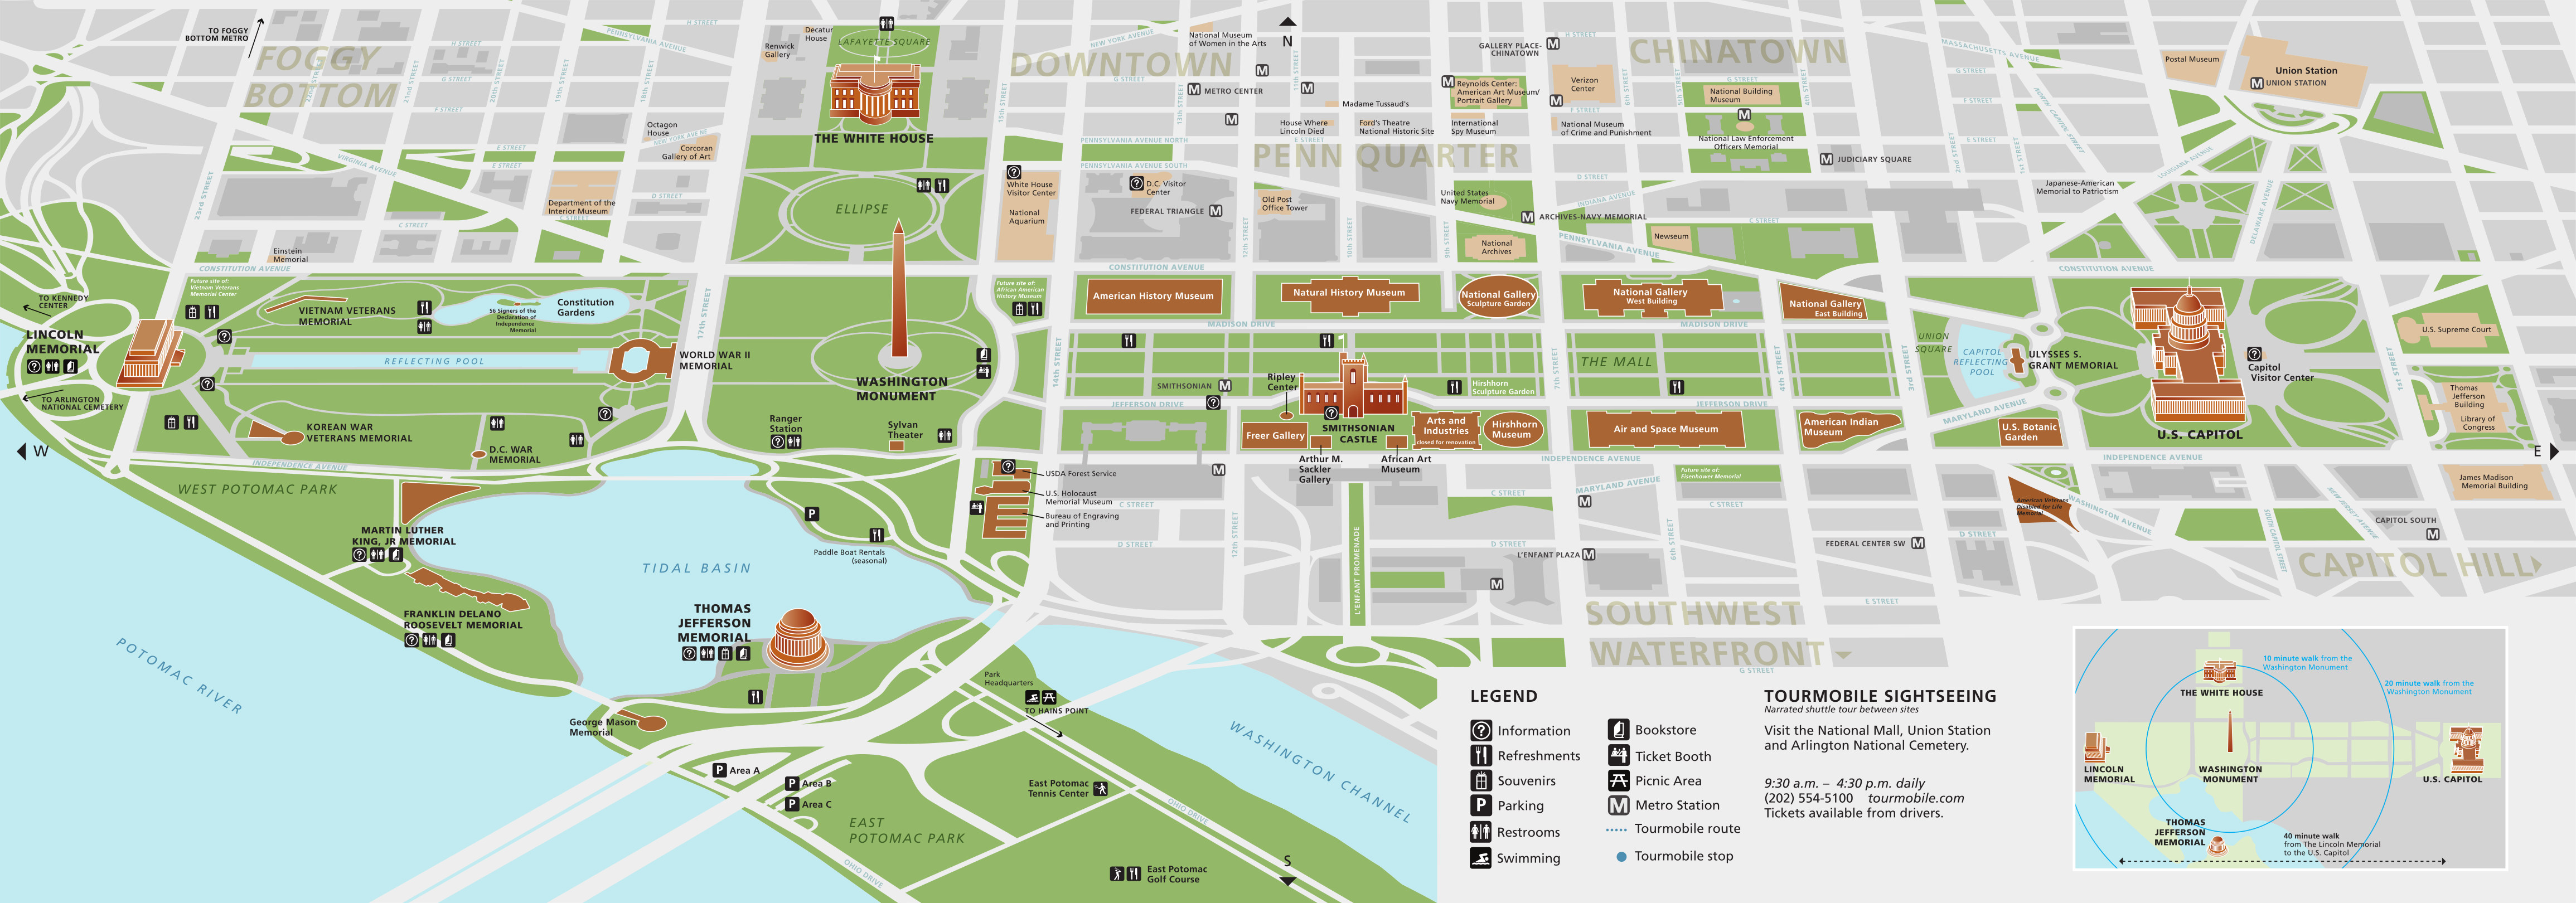 map-national-mall-washington-dc-printable-printable-templates